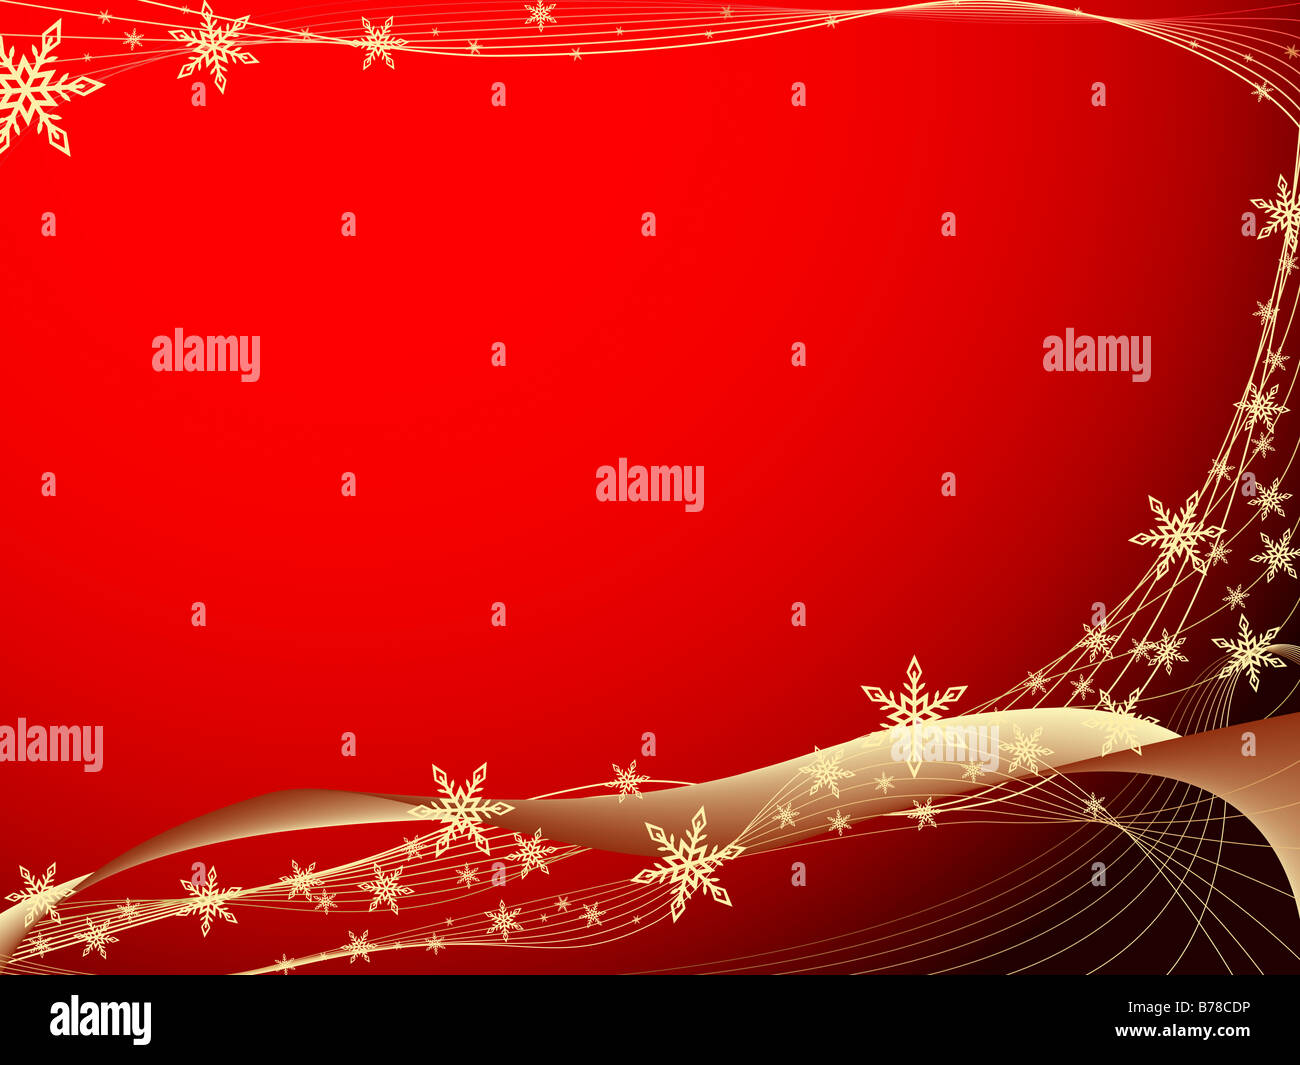 Christmas background illustration Stock Photo